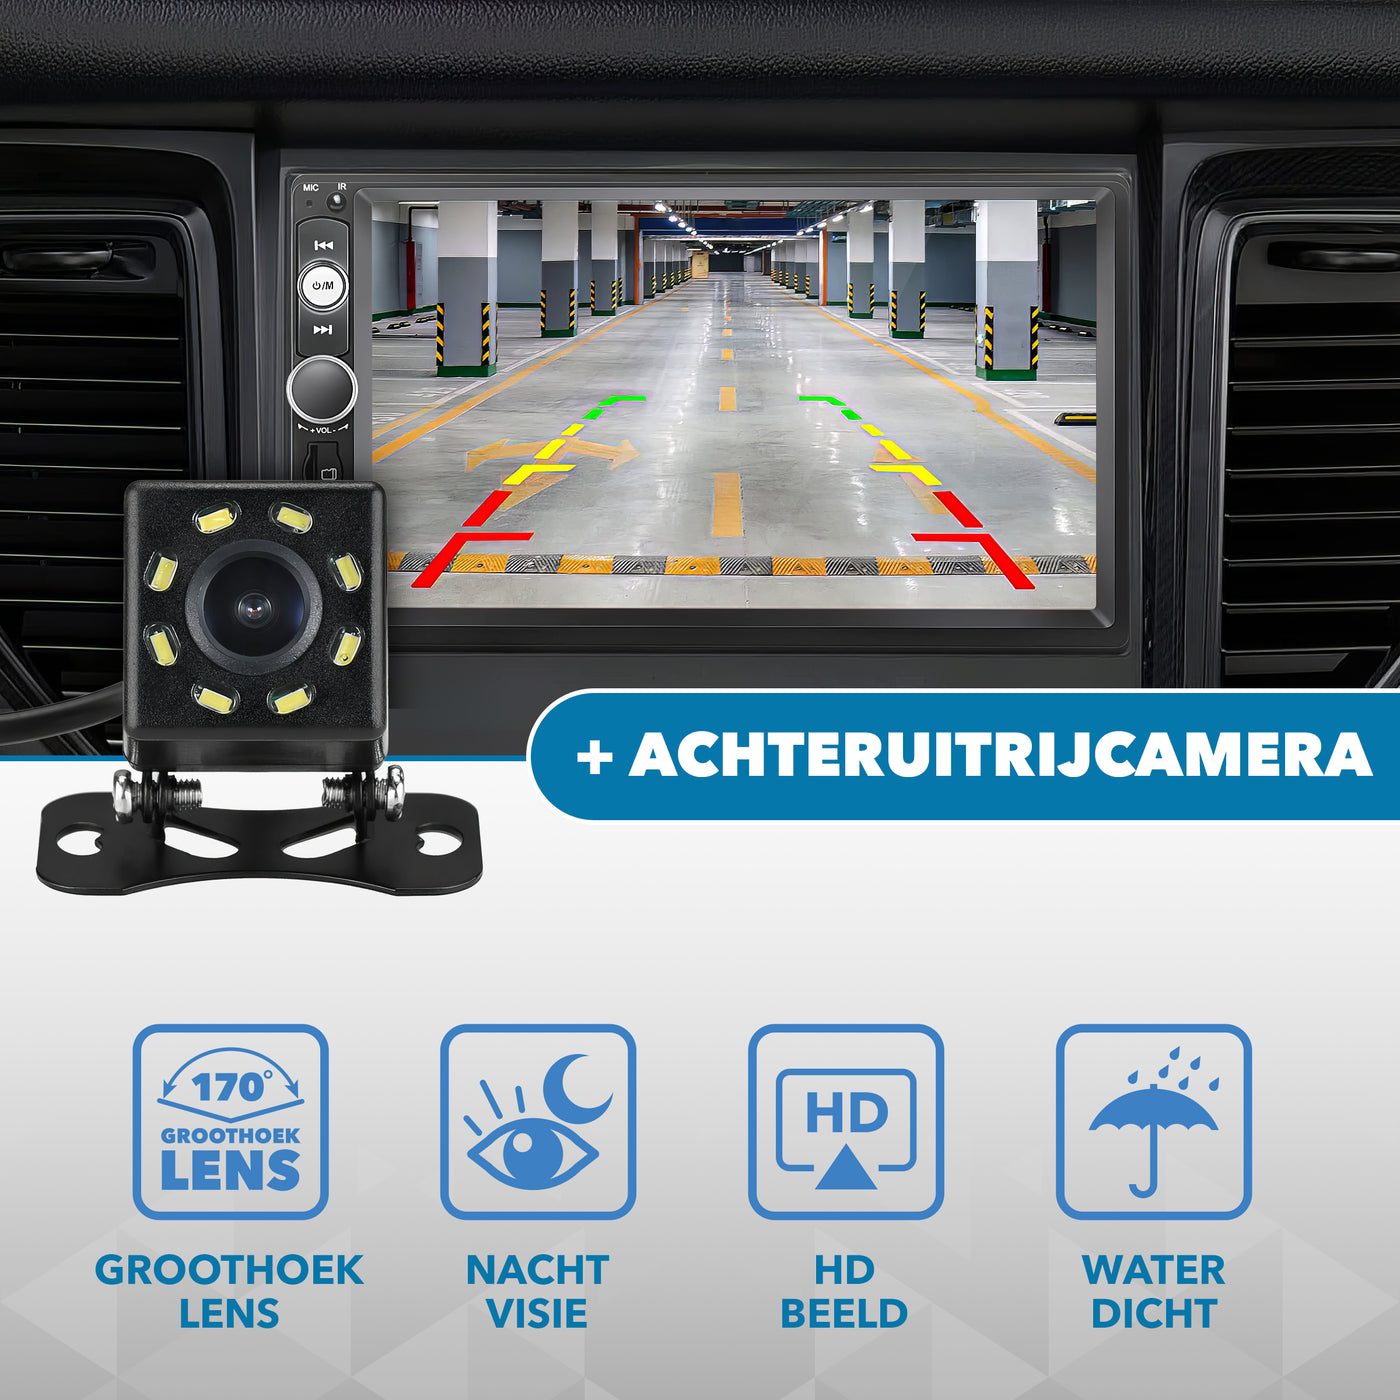 Carcemy Autoradio met Bluetooth voor alle auto's - USB & Aux - Handsfree bellen - Mirrorlink - Met ingebouwde Microfoon - Inclusief 8 Led Achteruitrijcamera